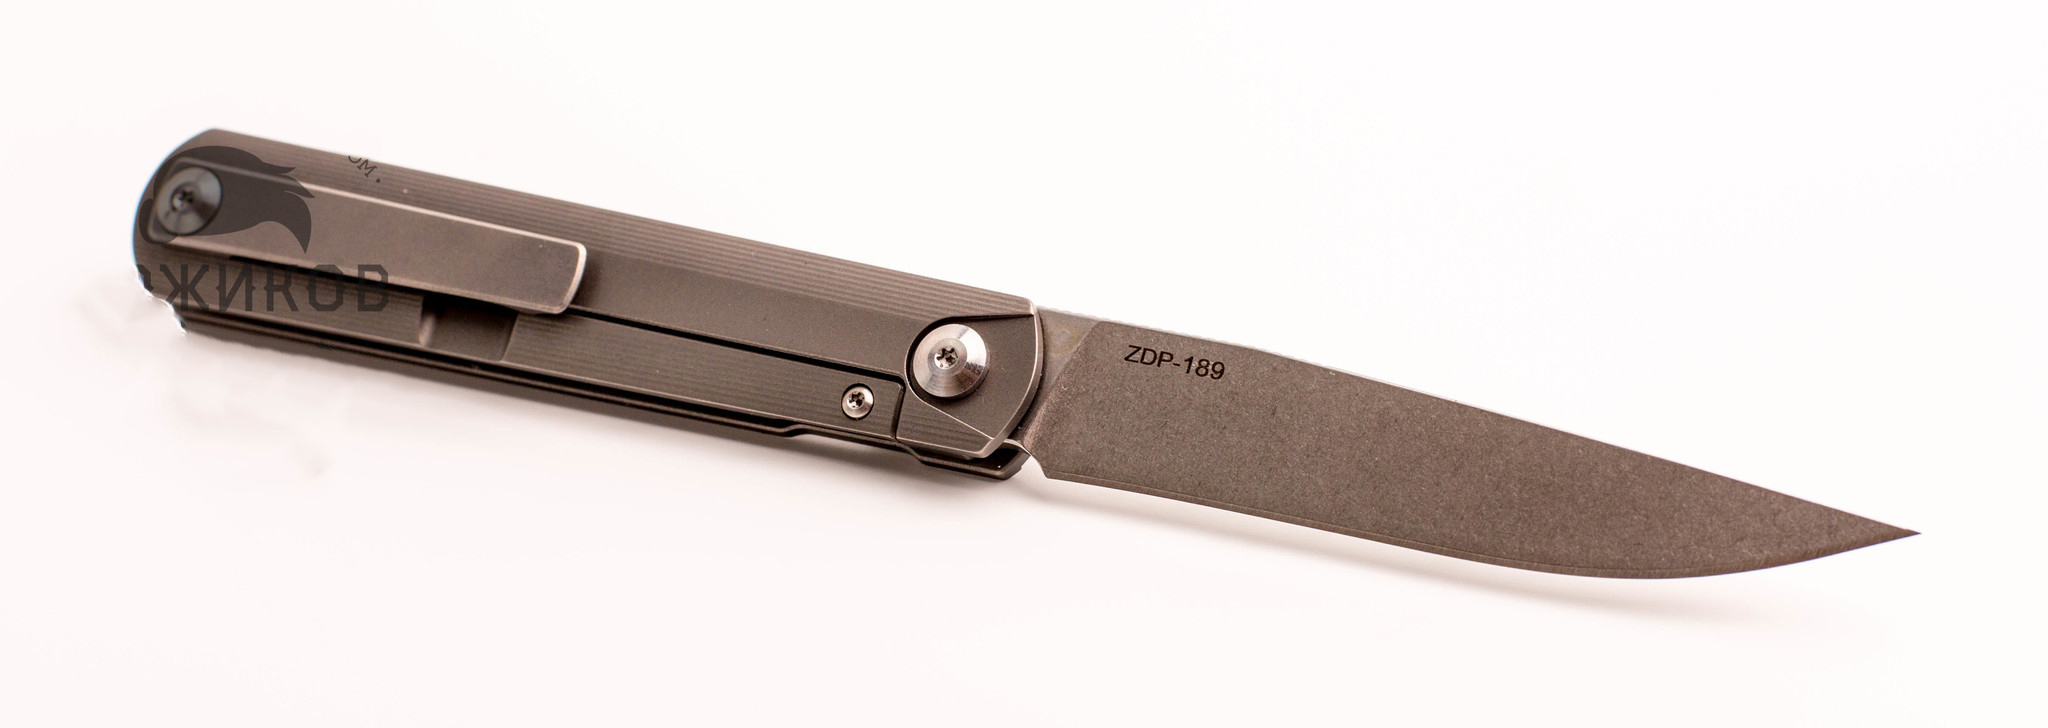 Тип: Складной нож; Производитель: ch outdoor knife; Марка стали: ZDP-189; О...